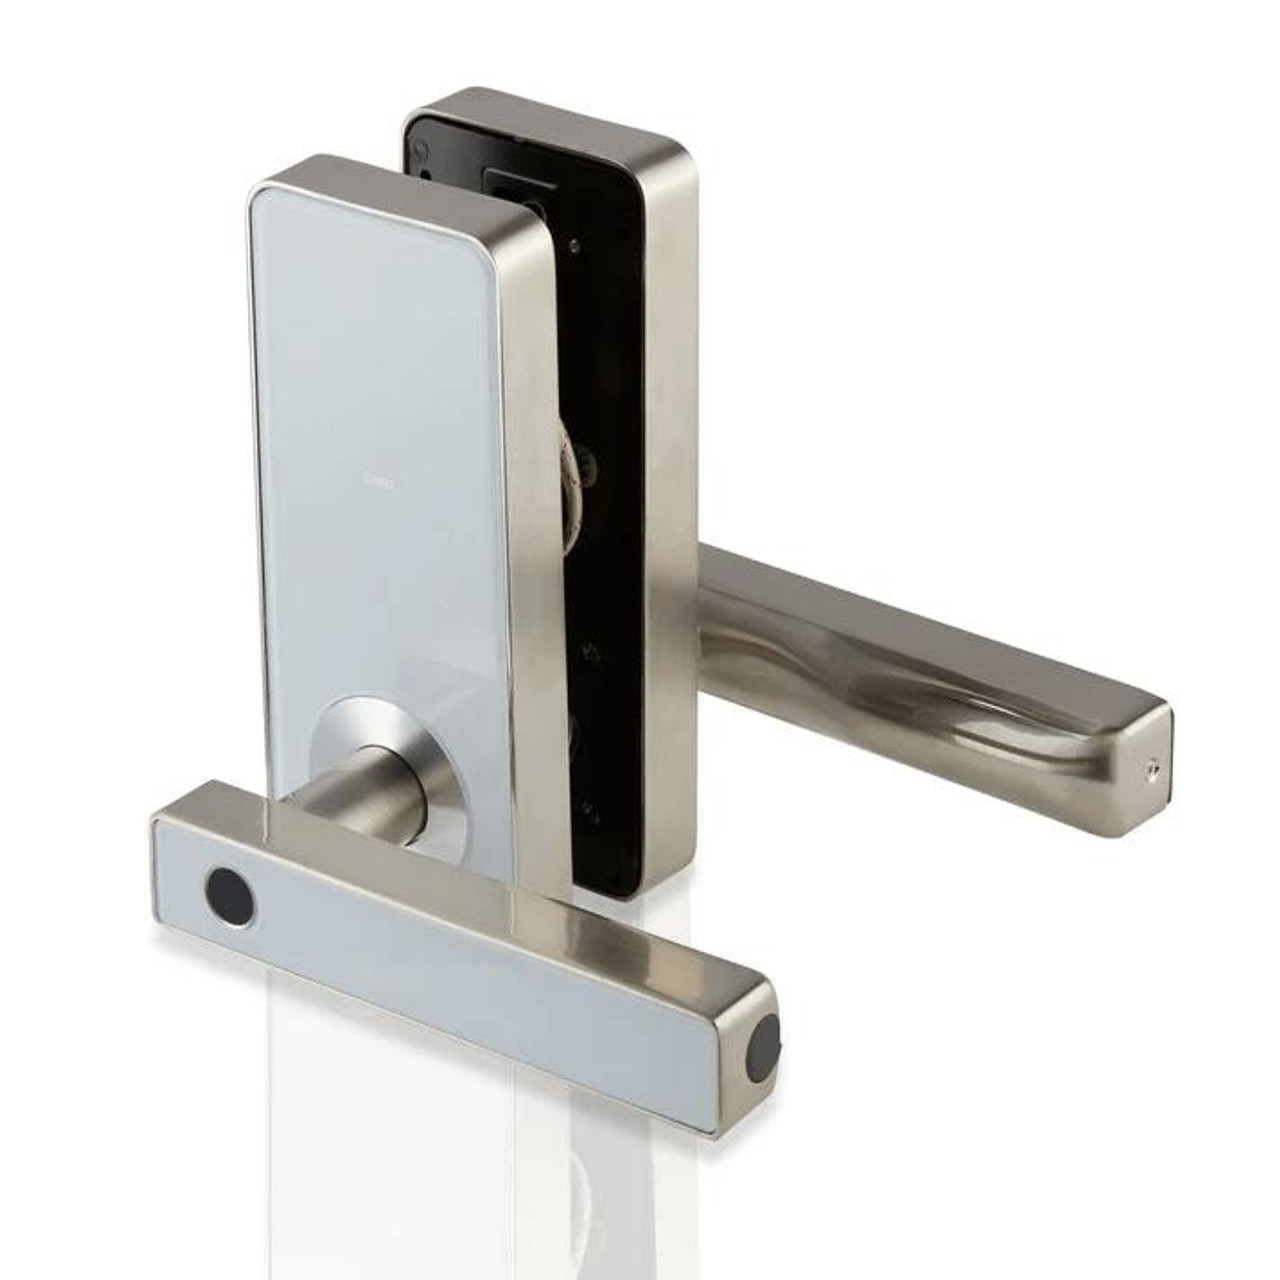 Auslock Handy Series Fingerprint Smart Door Lock Silver - 11B